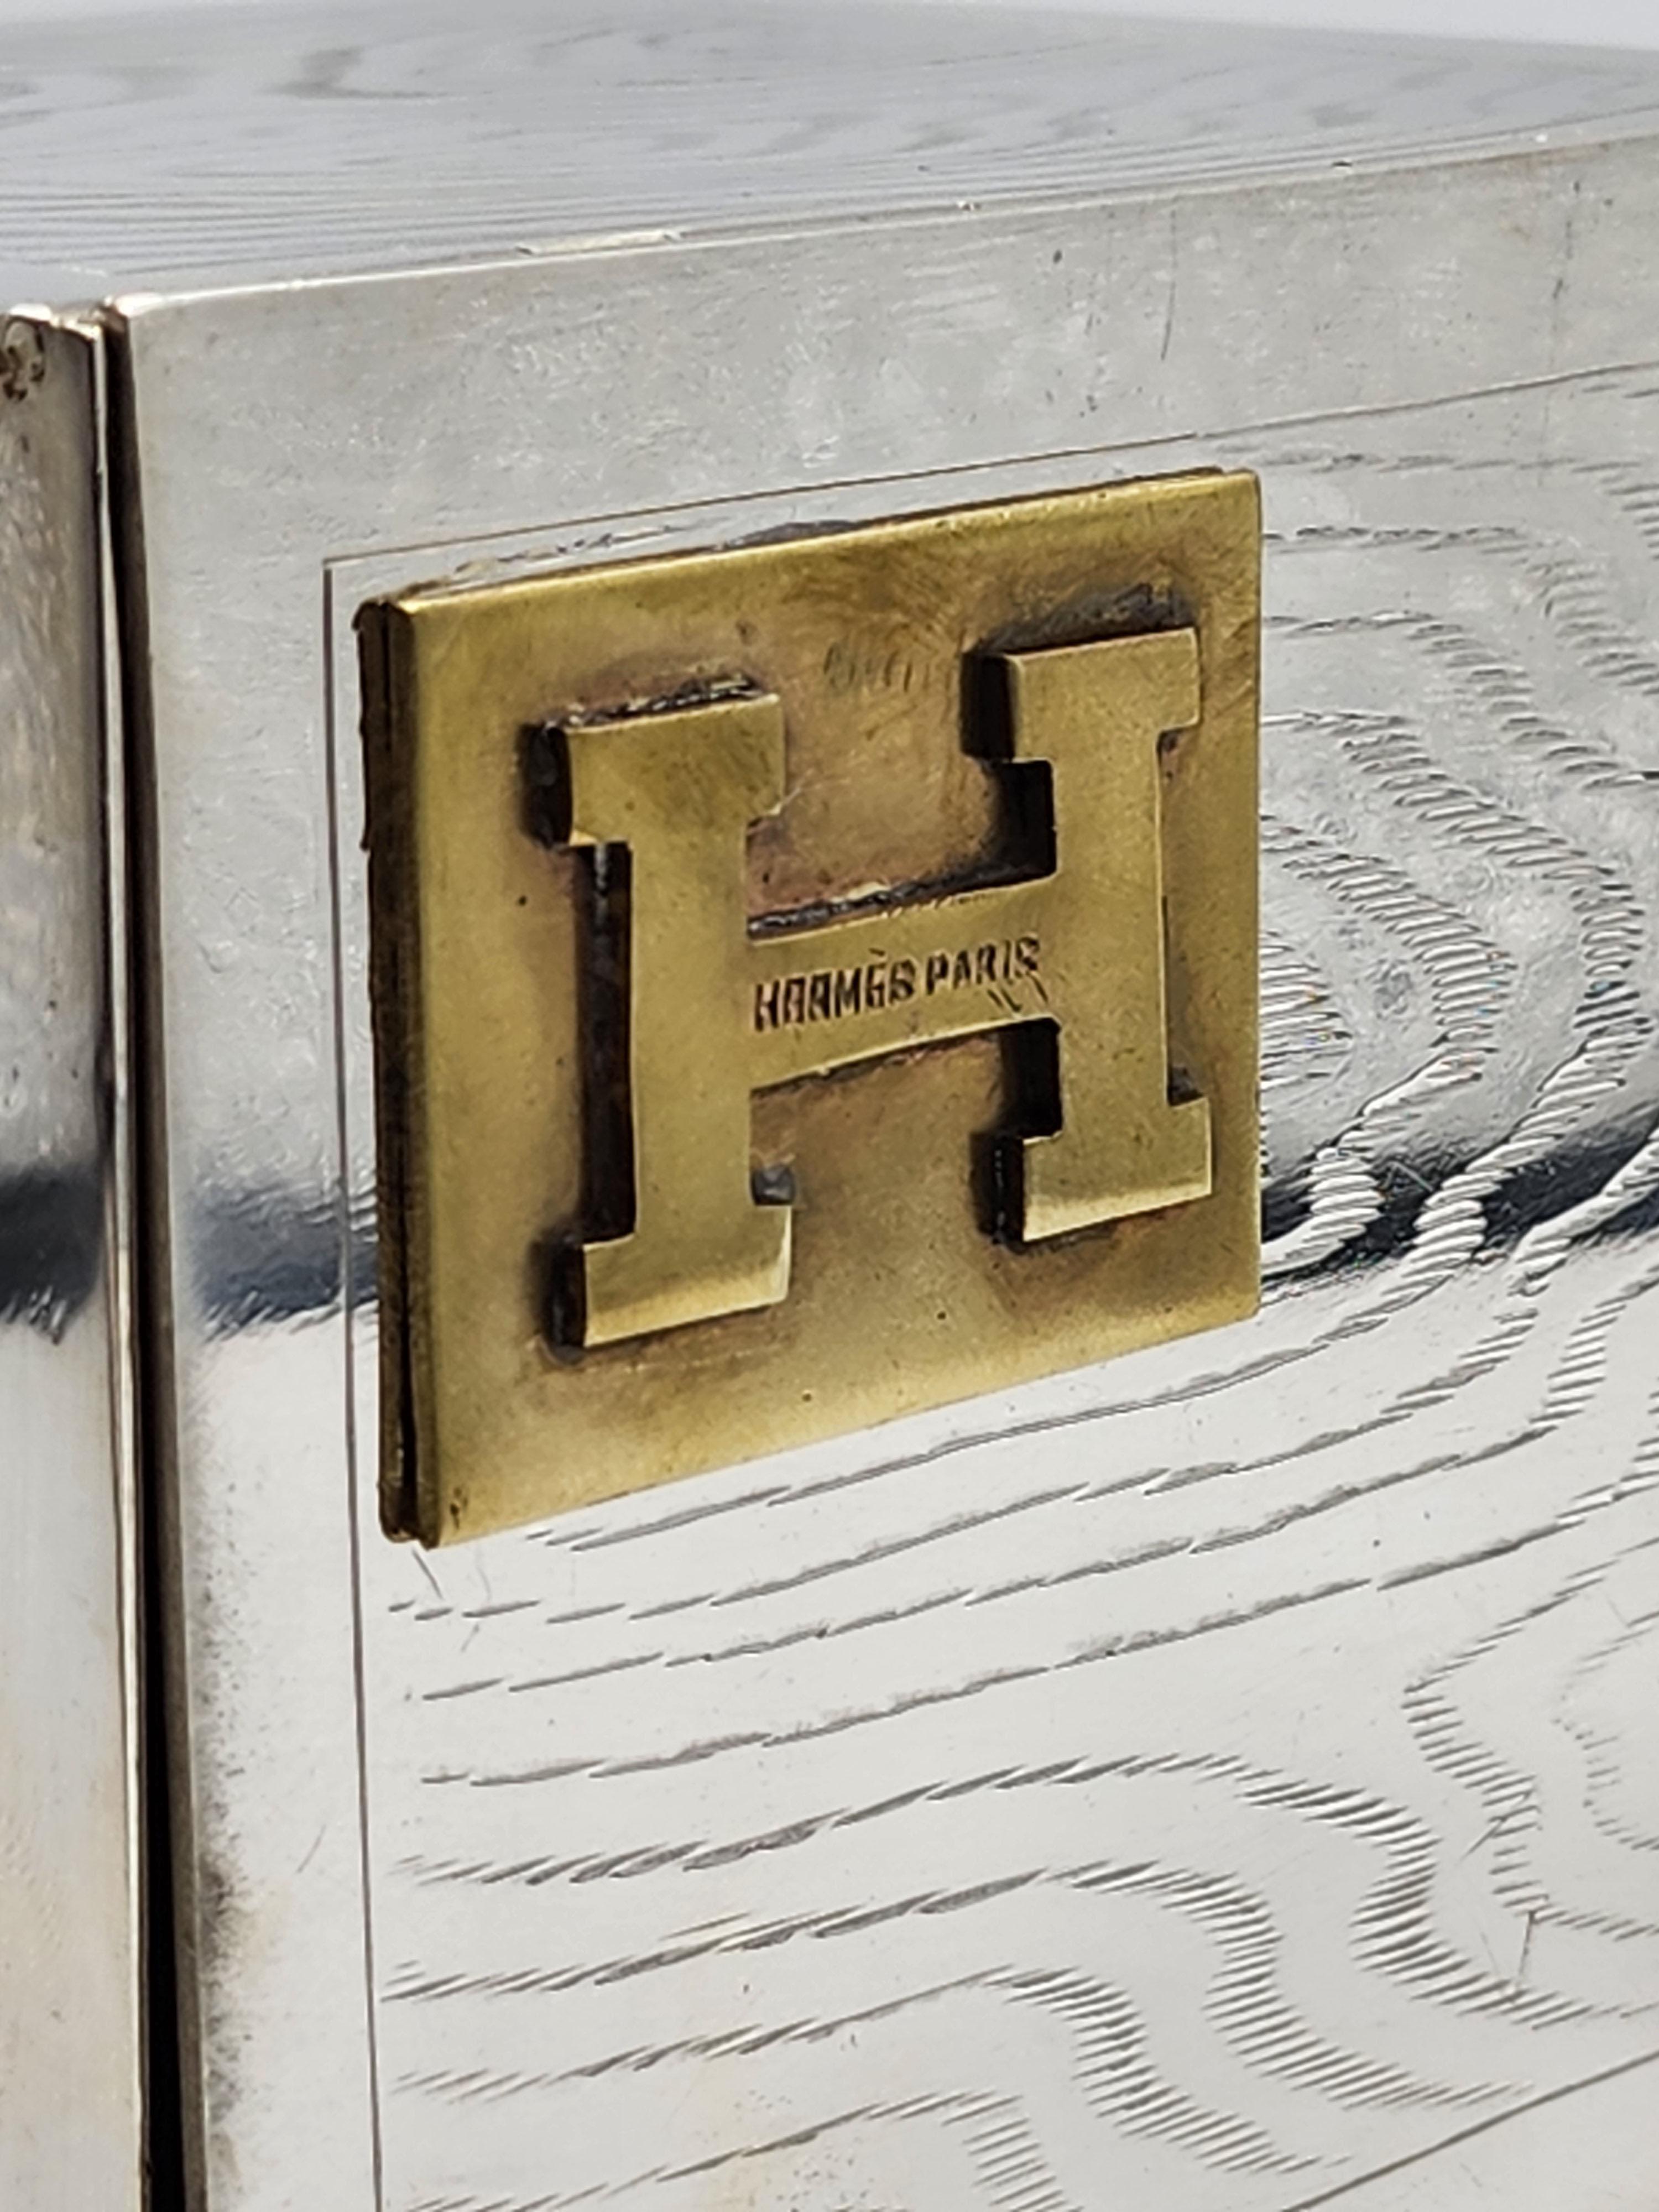 Hermes Parid Art Deco Tobacco Case
Élégante tabatière art déco en argent, avec le H d'Hermès Paris en or et avec une gravure sur le métal qui laisse supposer la représentation d'une boîte en bois.
Mesures :
Hauteur : 8 centimètre
Longueur : 10.5